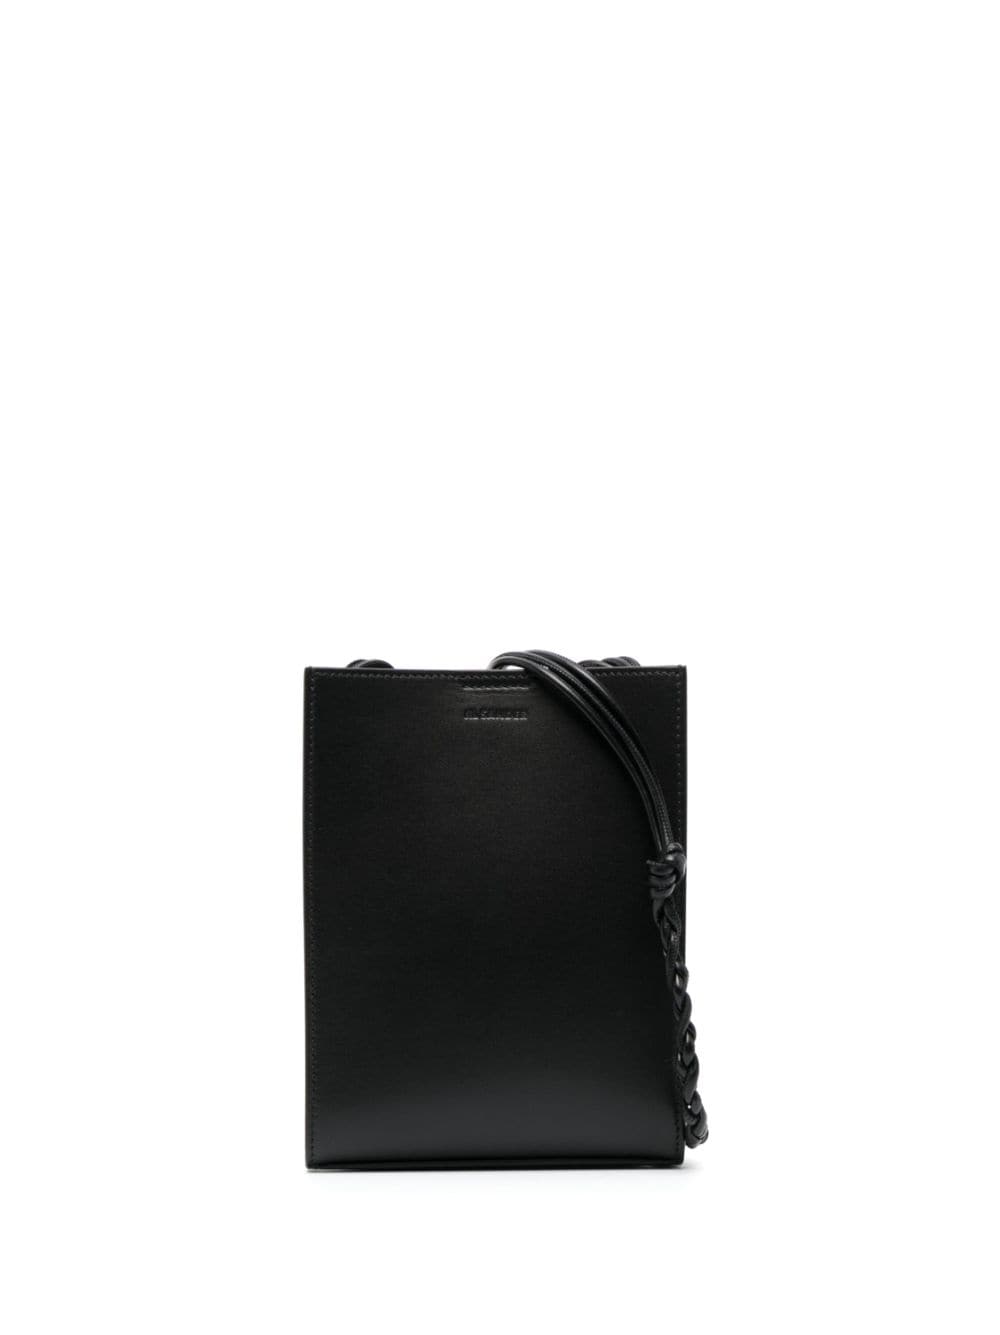 Jil Sander Tangle shoulder bag - Black von Jil Sander